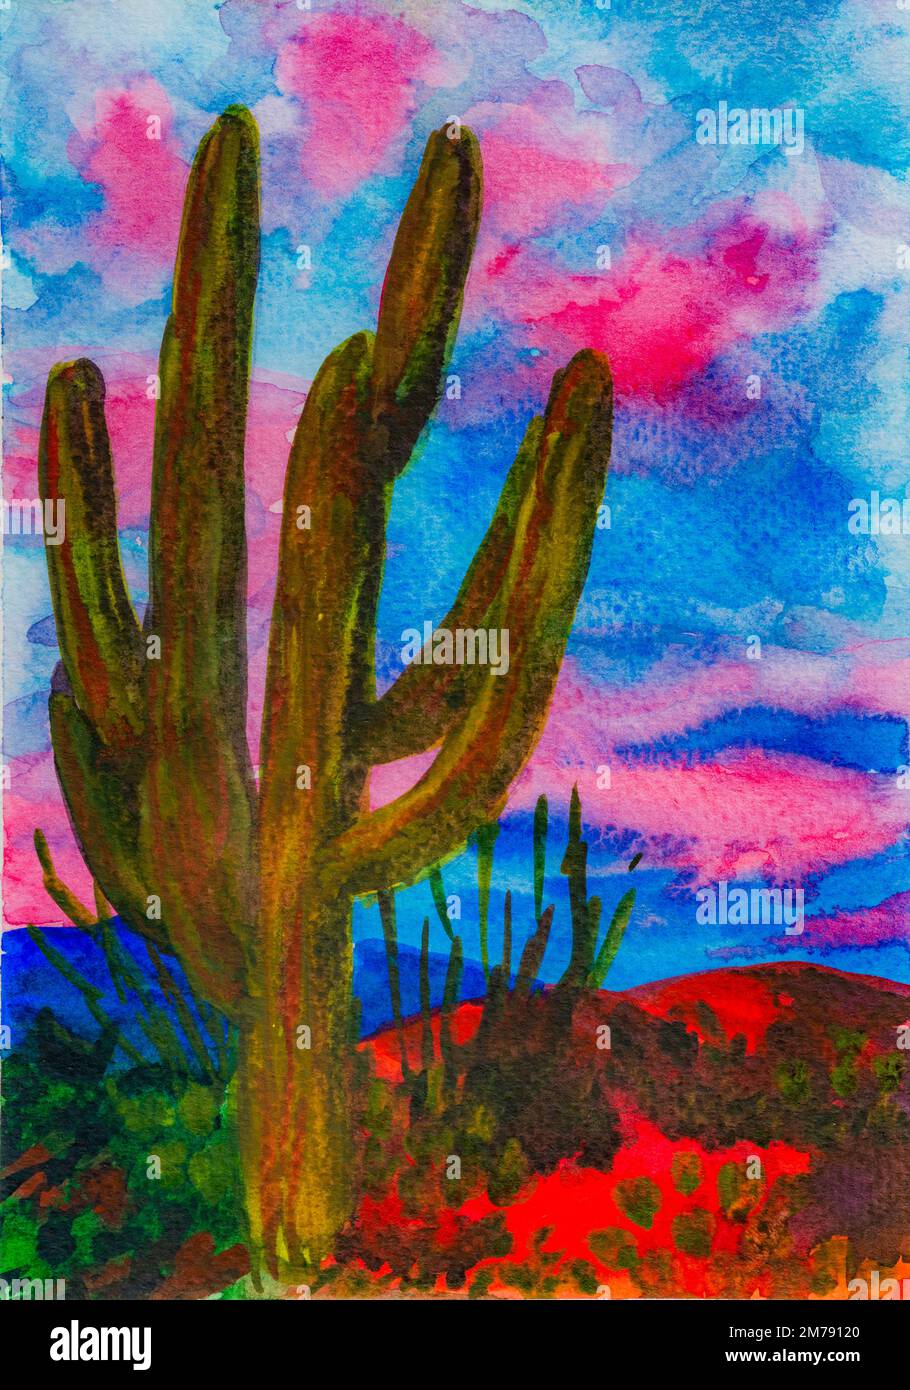 Coucher de soleil dans le parc national de Saguaro, Arizona. Aquarelle. Banque D'Images